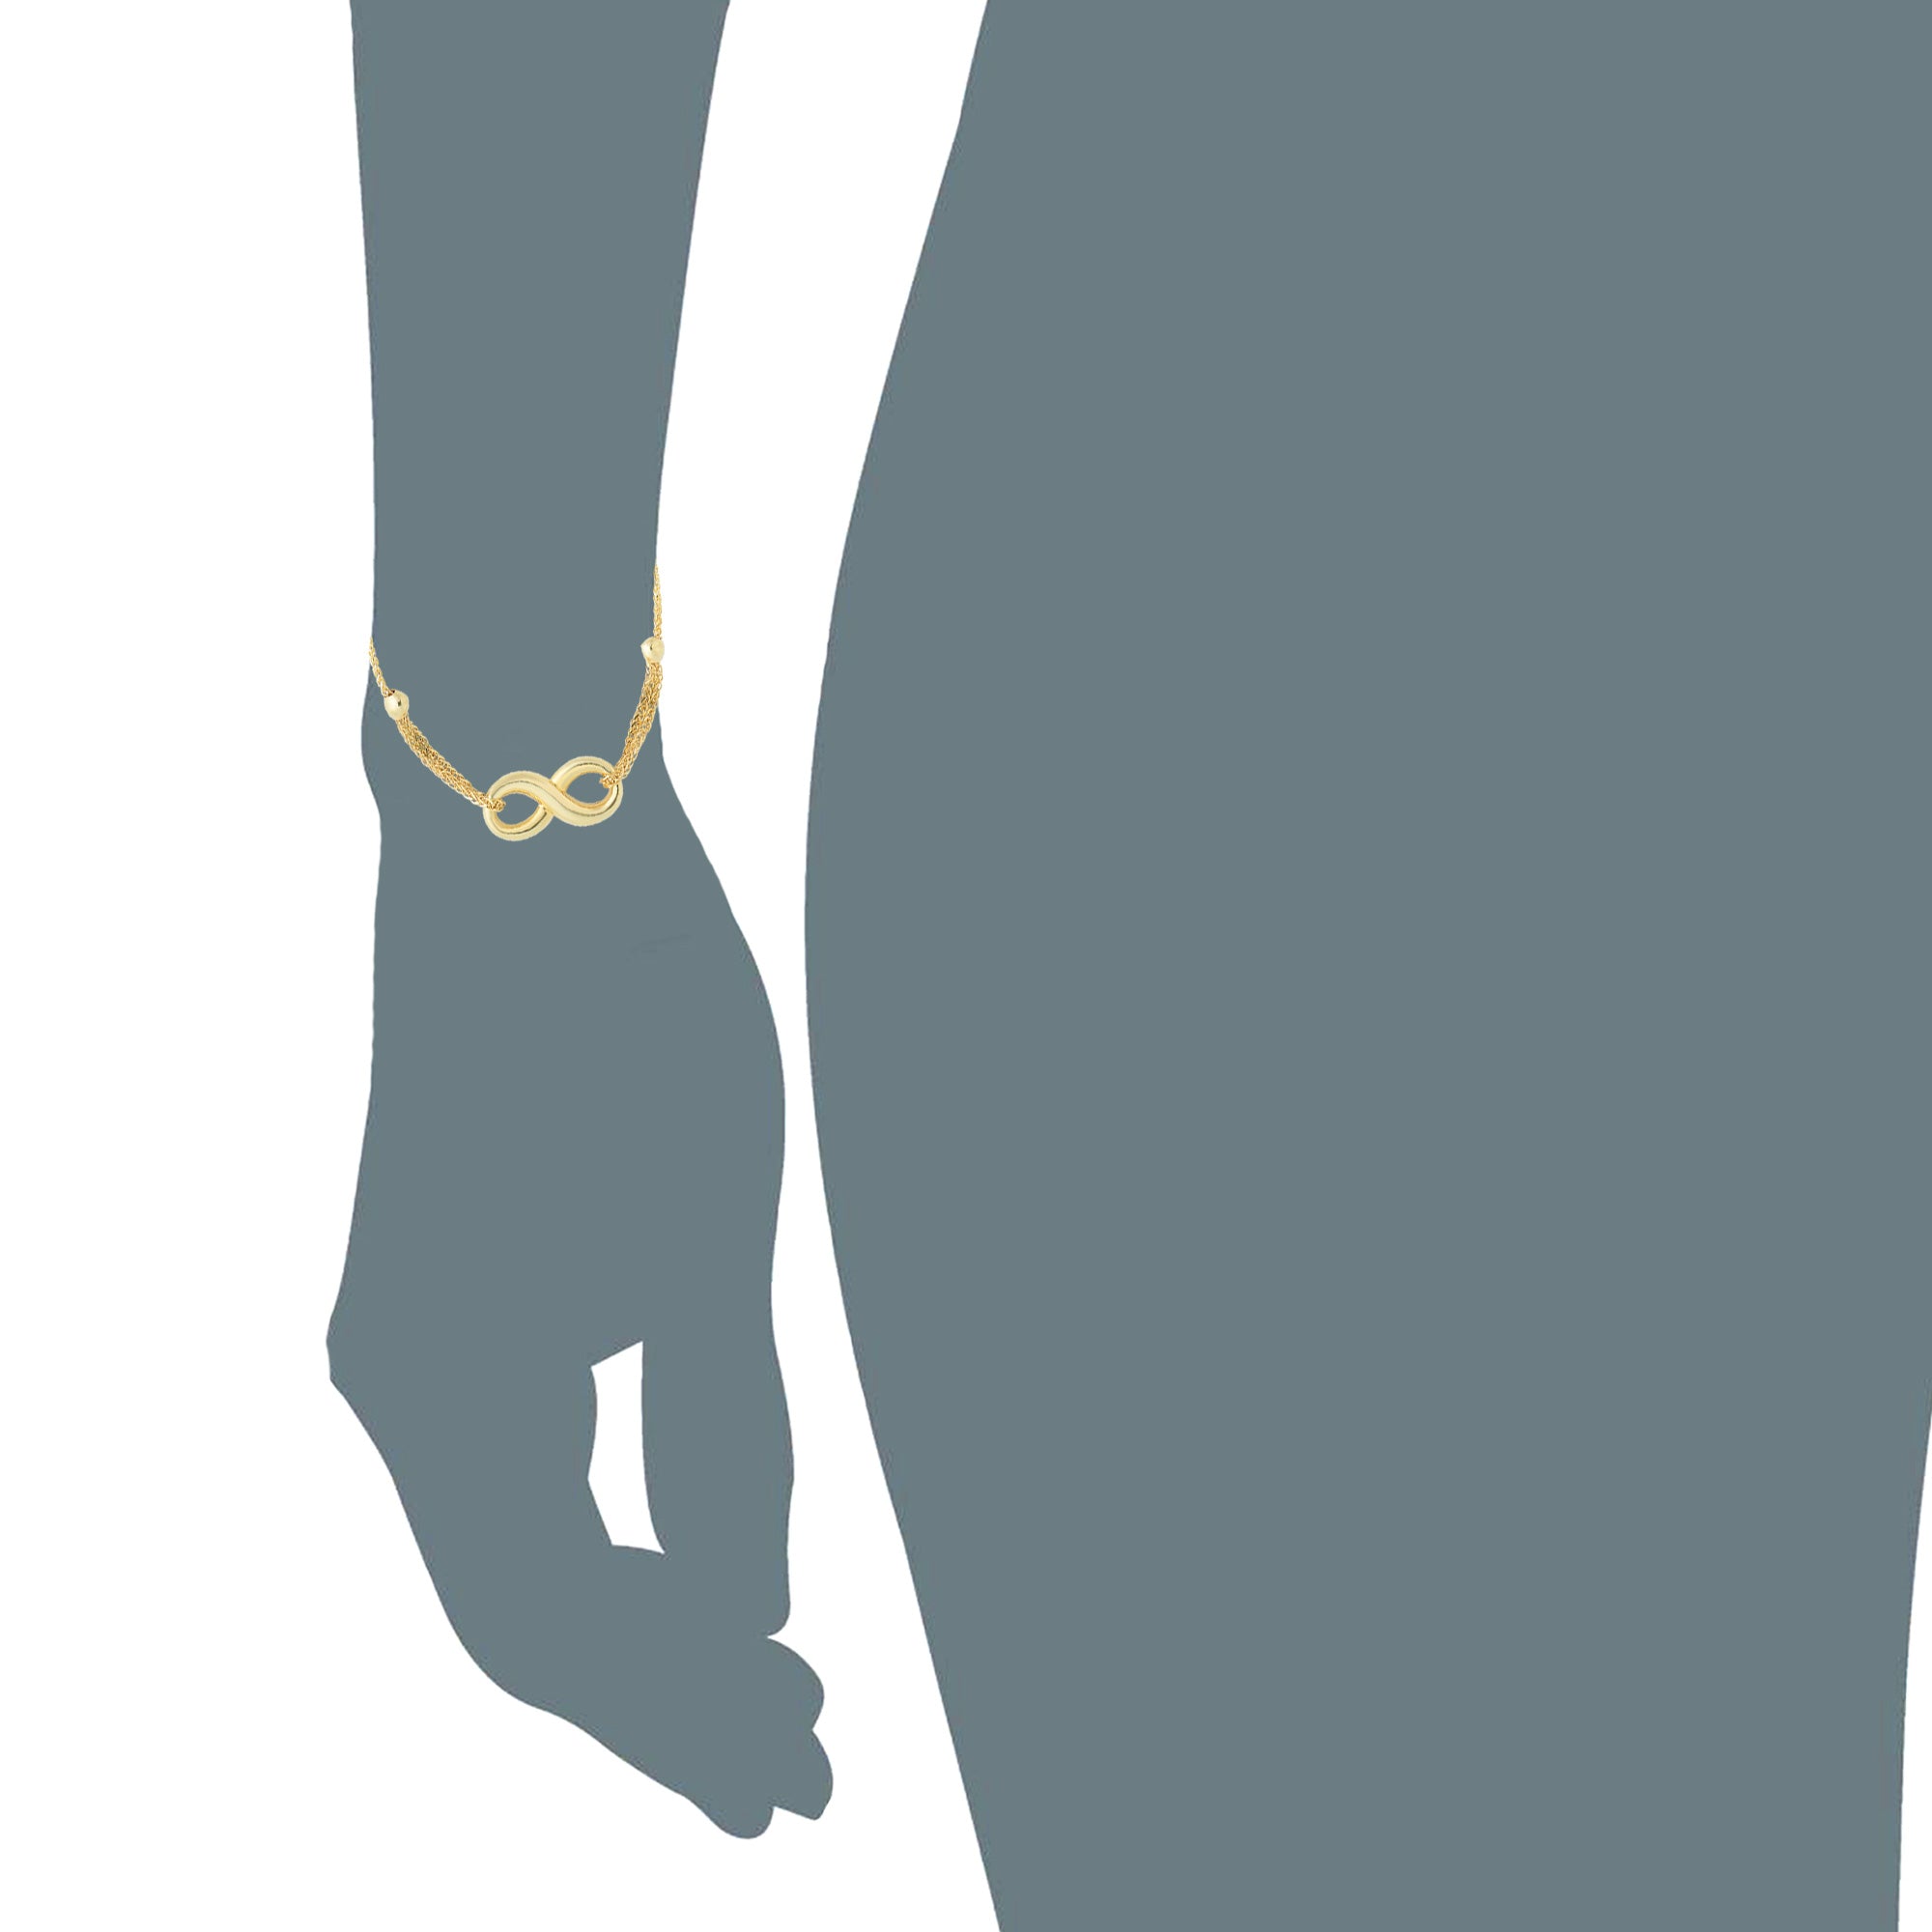 Bracciale regolabile Infinity Theme Bolo Friendship in oro giallo 14 carati, gioielli di design da 9,25" per uomini e donne